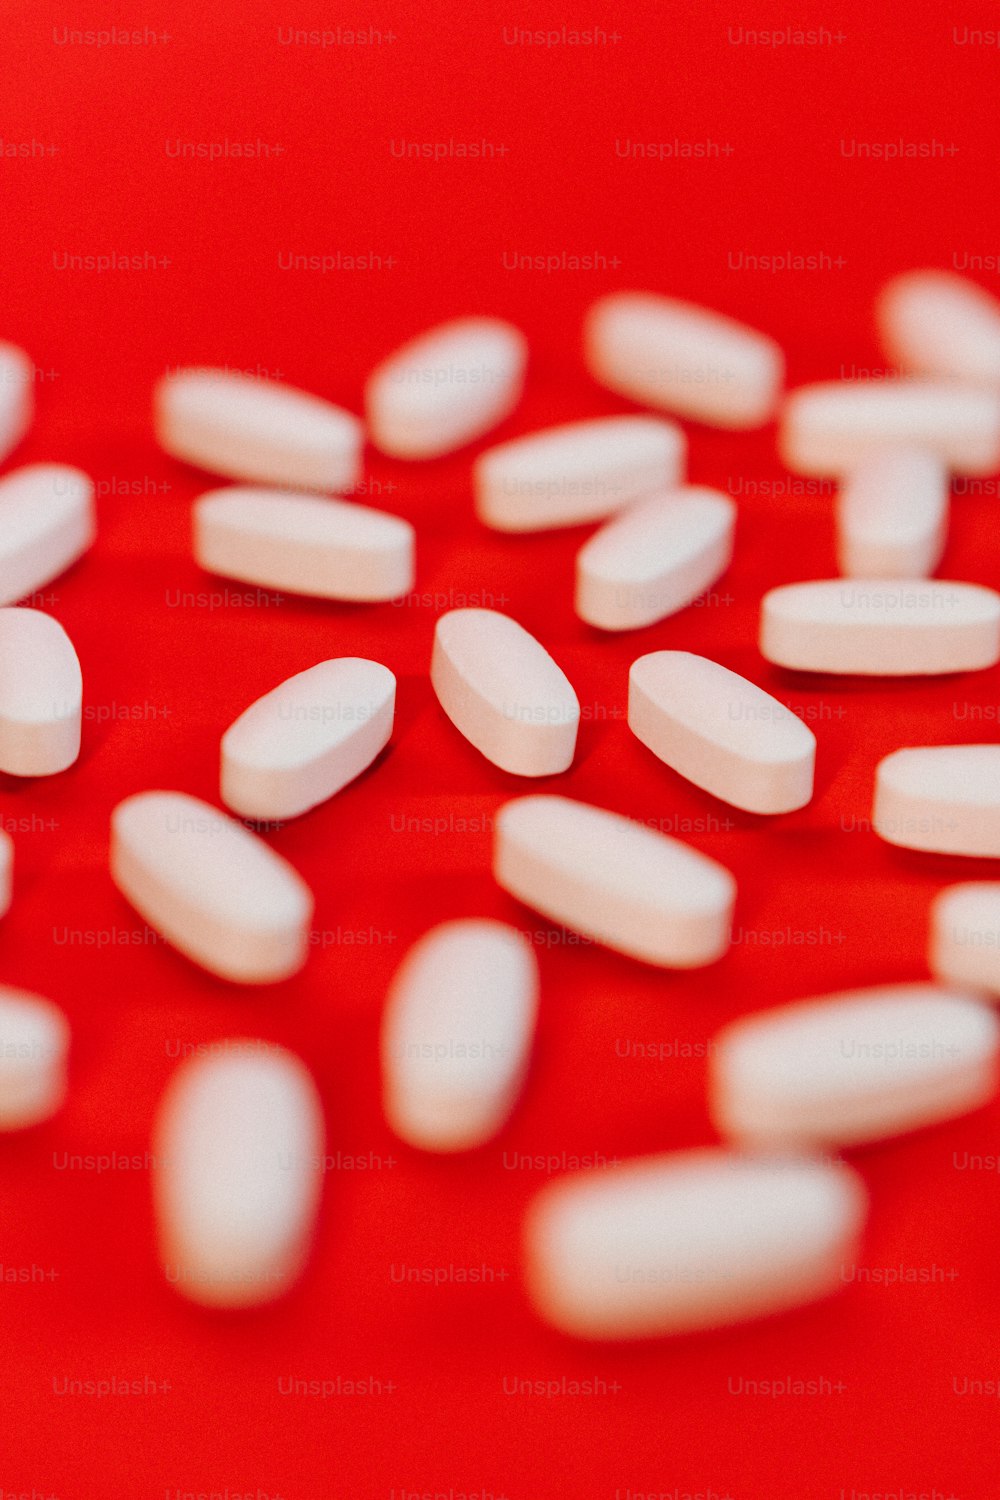 un primer plano de píldoras blancas sobre una superficie roja